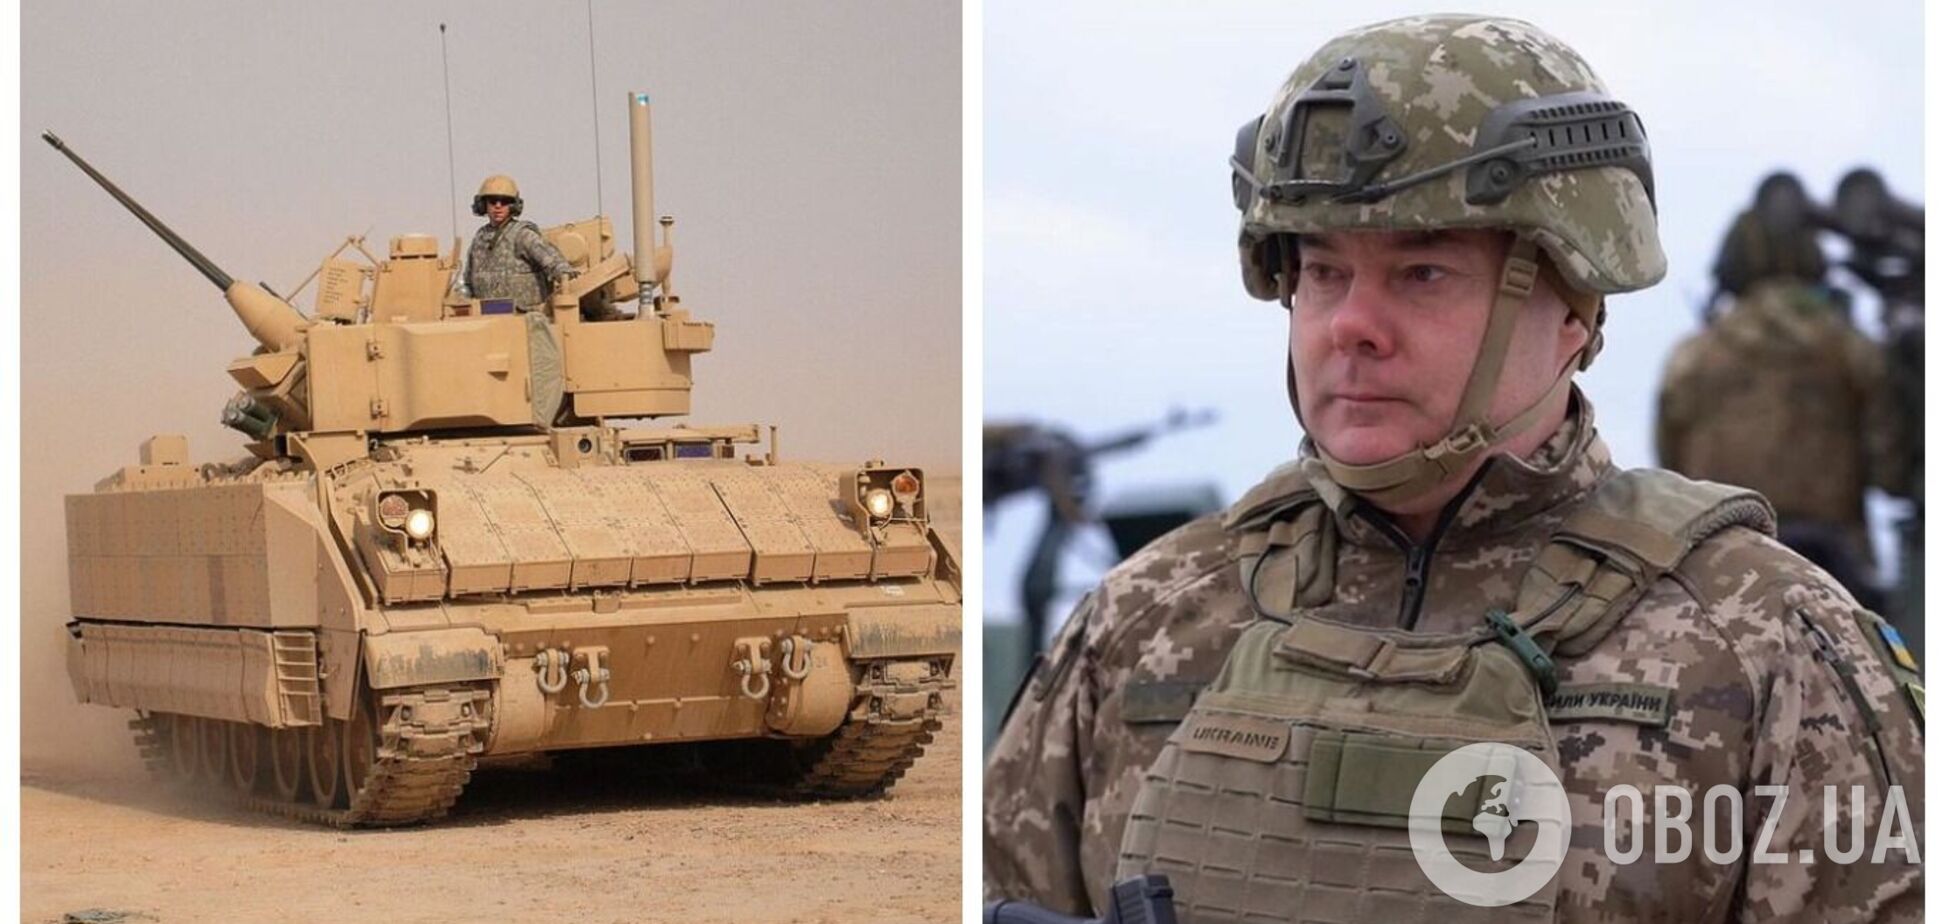 ВСУ формируют новые подразделения, которые будут использовать танки Leopard 2 и БМП Bradley, – Наев